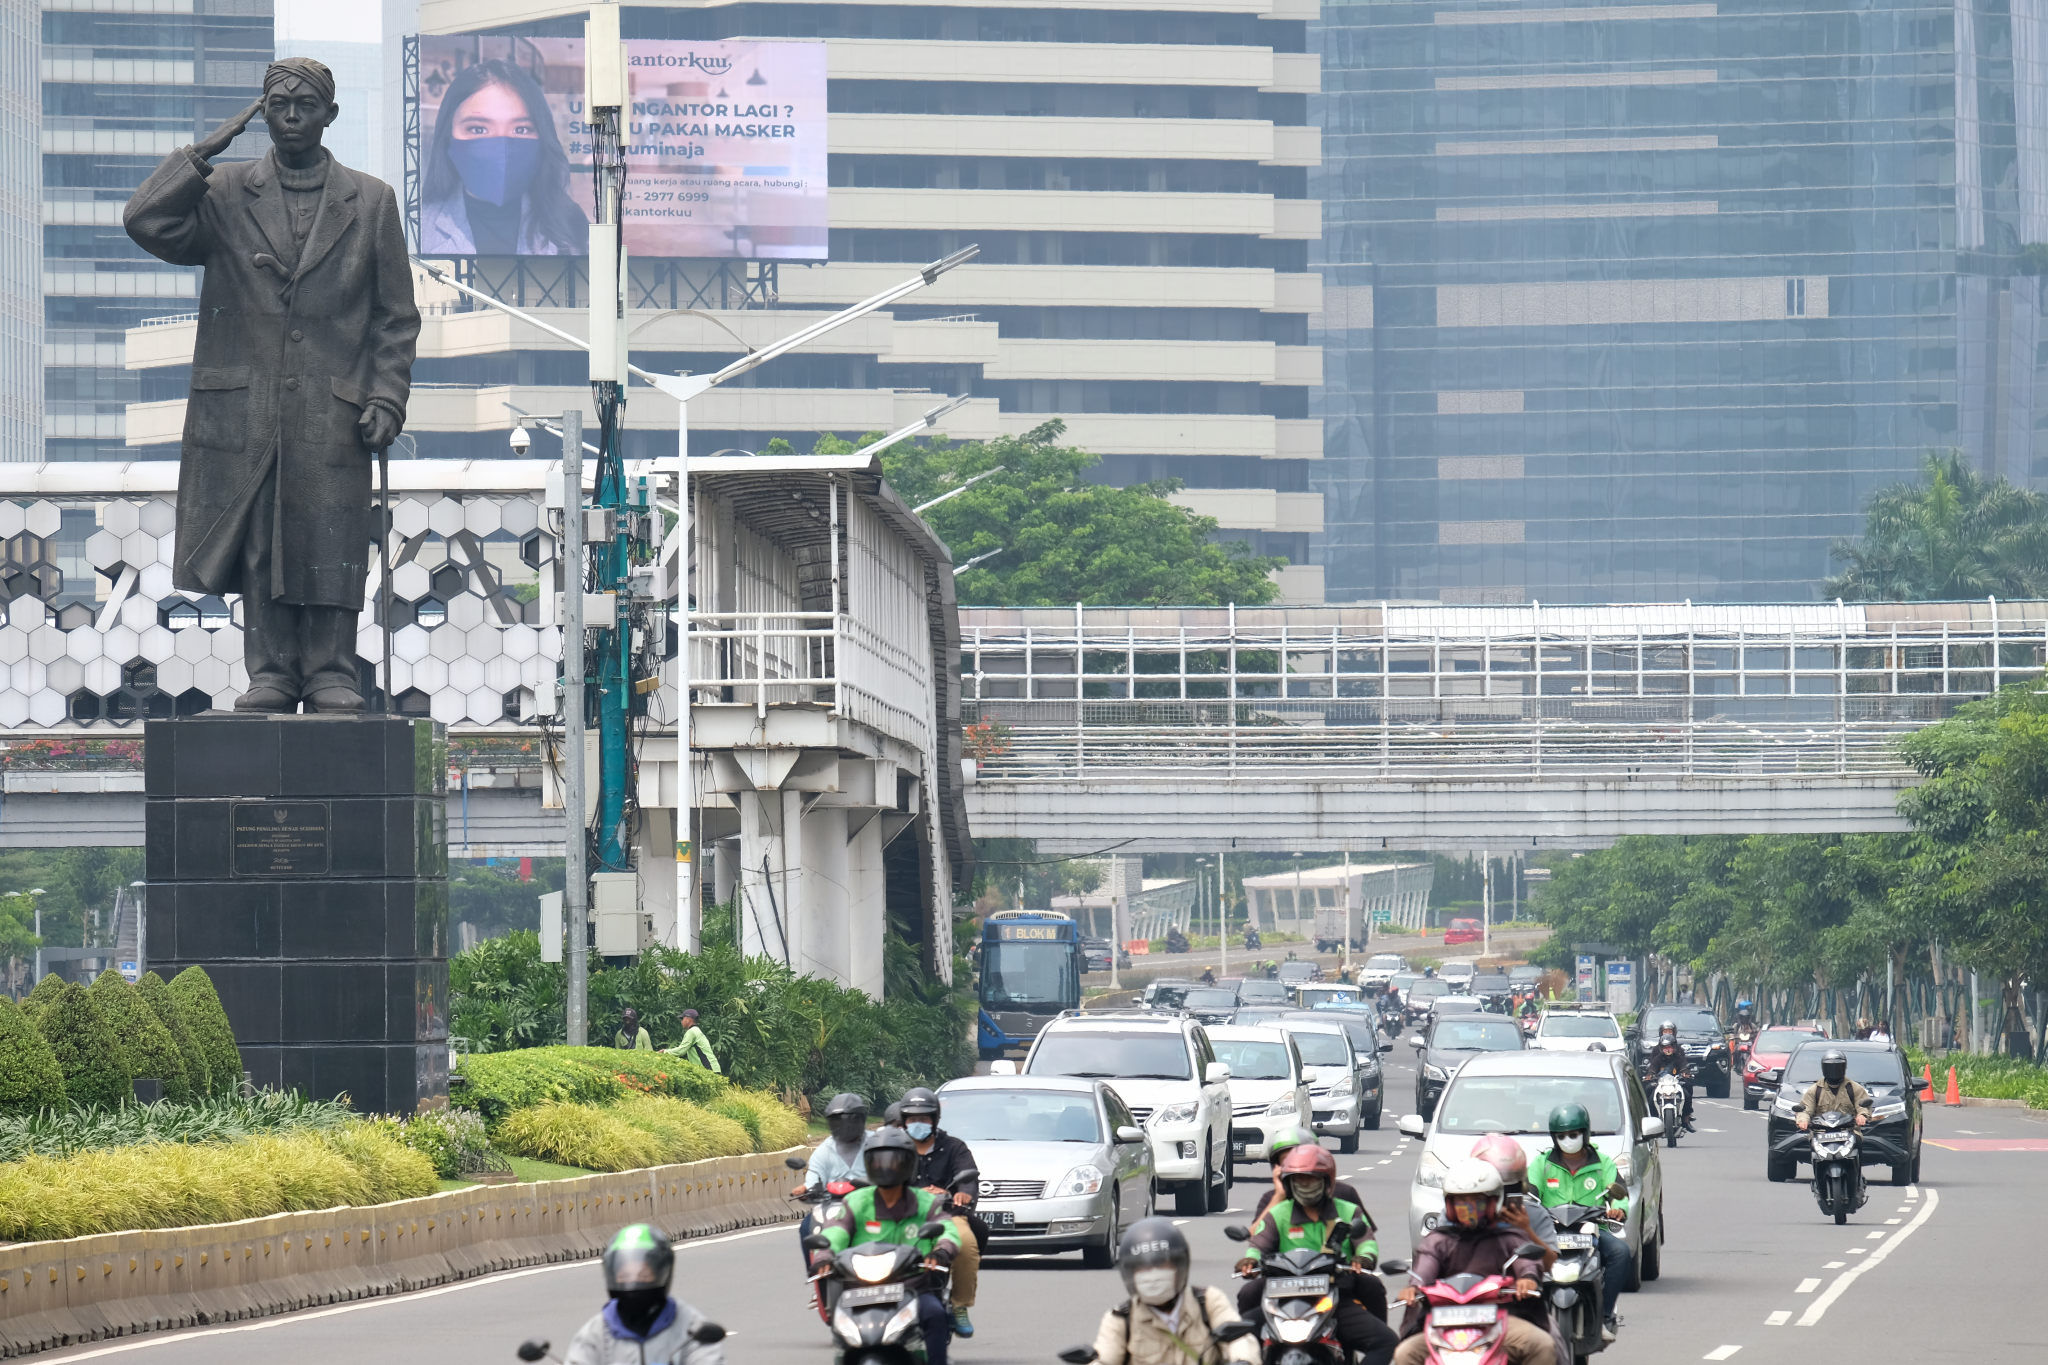 <p>Suasana ruas jalan ibukota saat pemberlakuan kembali PSBB di Jalan Sudirman, Jakarta, Senin, 14 September 2020. Gubernur DKI Jakarta Anies Baswedan memutuskan menerapkan kembali pembatasan sosial berskala besar (PSBB) jilid dua atau PSBB pengetatan, yang berlaku selama dua pekan mulai Senin, 14 September 2020 hingga 27 September 2020. Penerapan PSBB itu mengacu pada Pergub Nomor 88 Tahun 2020 terkait perubahan Pergub Nomor 33 Tahun 2020 tentang Pelaksanaan PSBB dalam Penanganan Covid-19 di DKI Jakarta. Foto: Ismail Pohan/TrenAsia</p>
